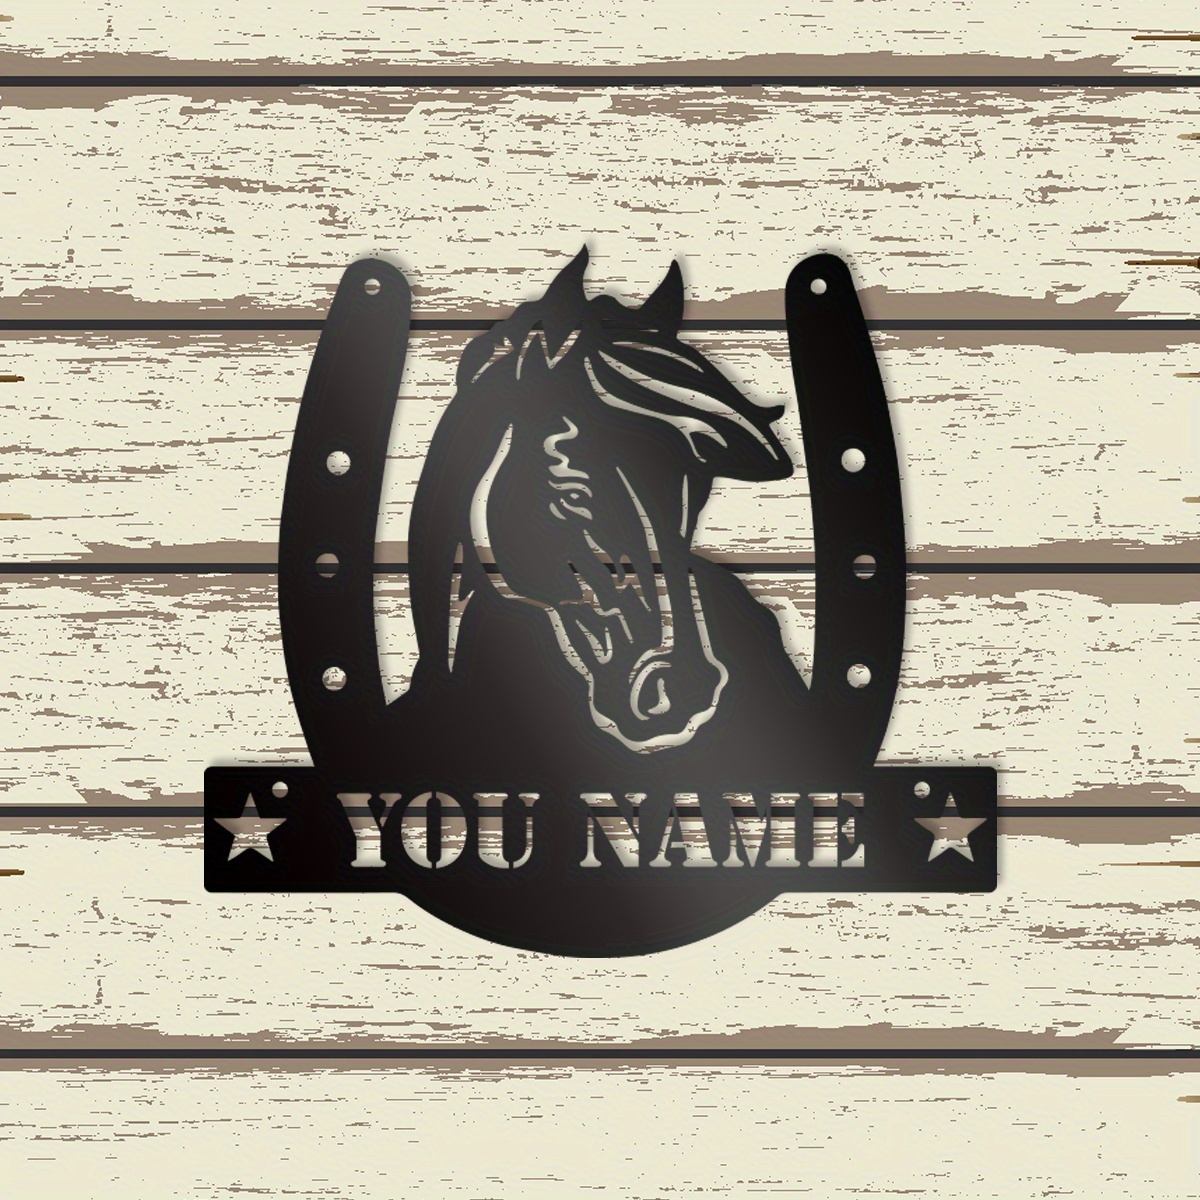 1 шт., Налаштований металевий знак для конюшні, декор стіни для конного спорту, персоналізована назва ферми з монограмою у вигляді підкови, адресна дошка для коней, художній декор для конюшень та амбарів